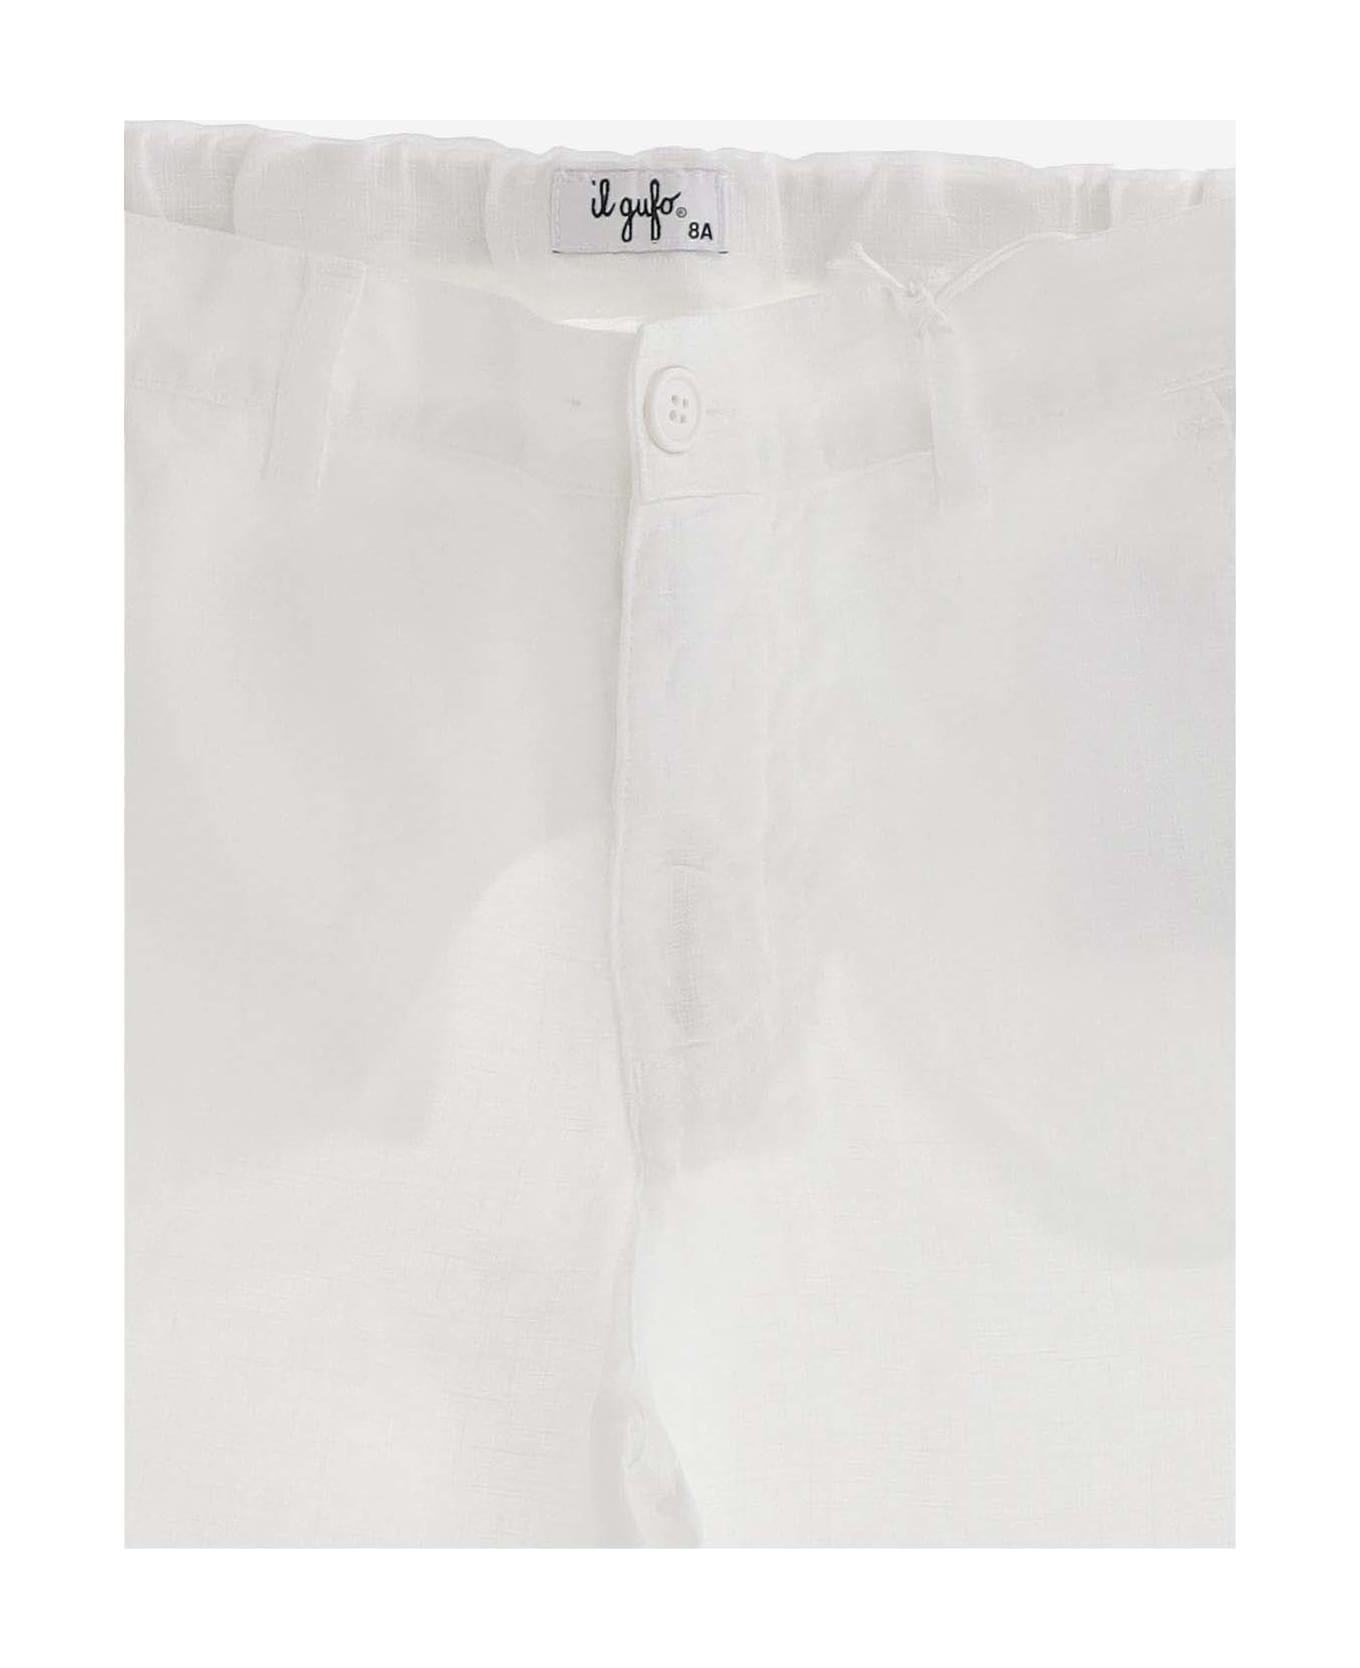 Il Gufo Linen Shorts - White ボトムス